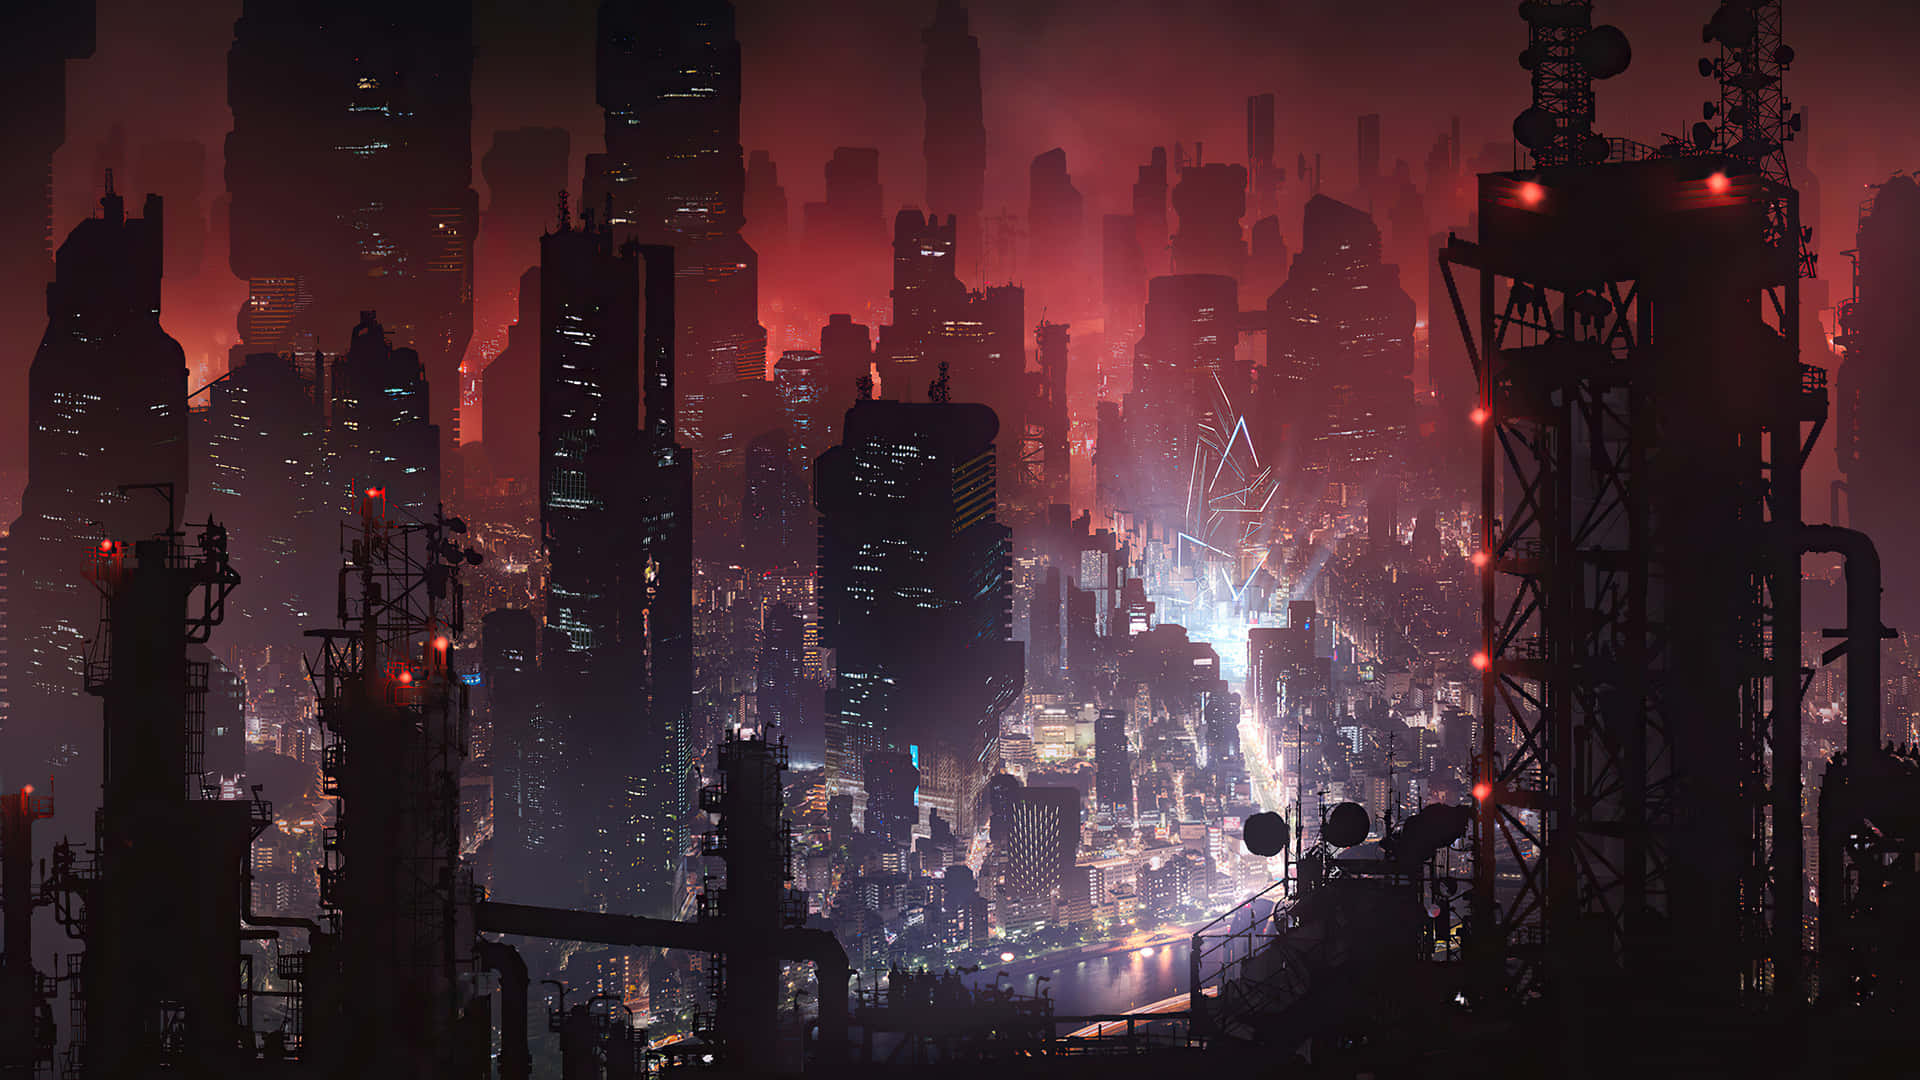 Esplorale Vertiginose Altezze E Profondità Di Cyberpunk City